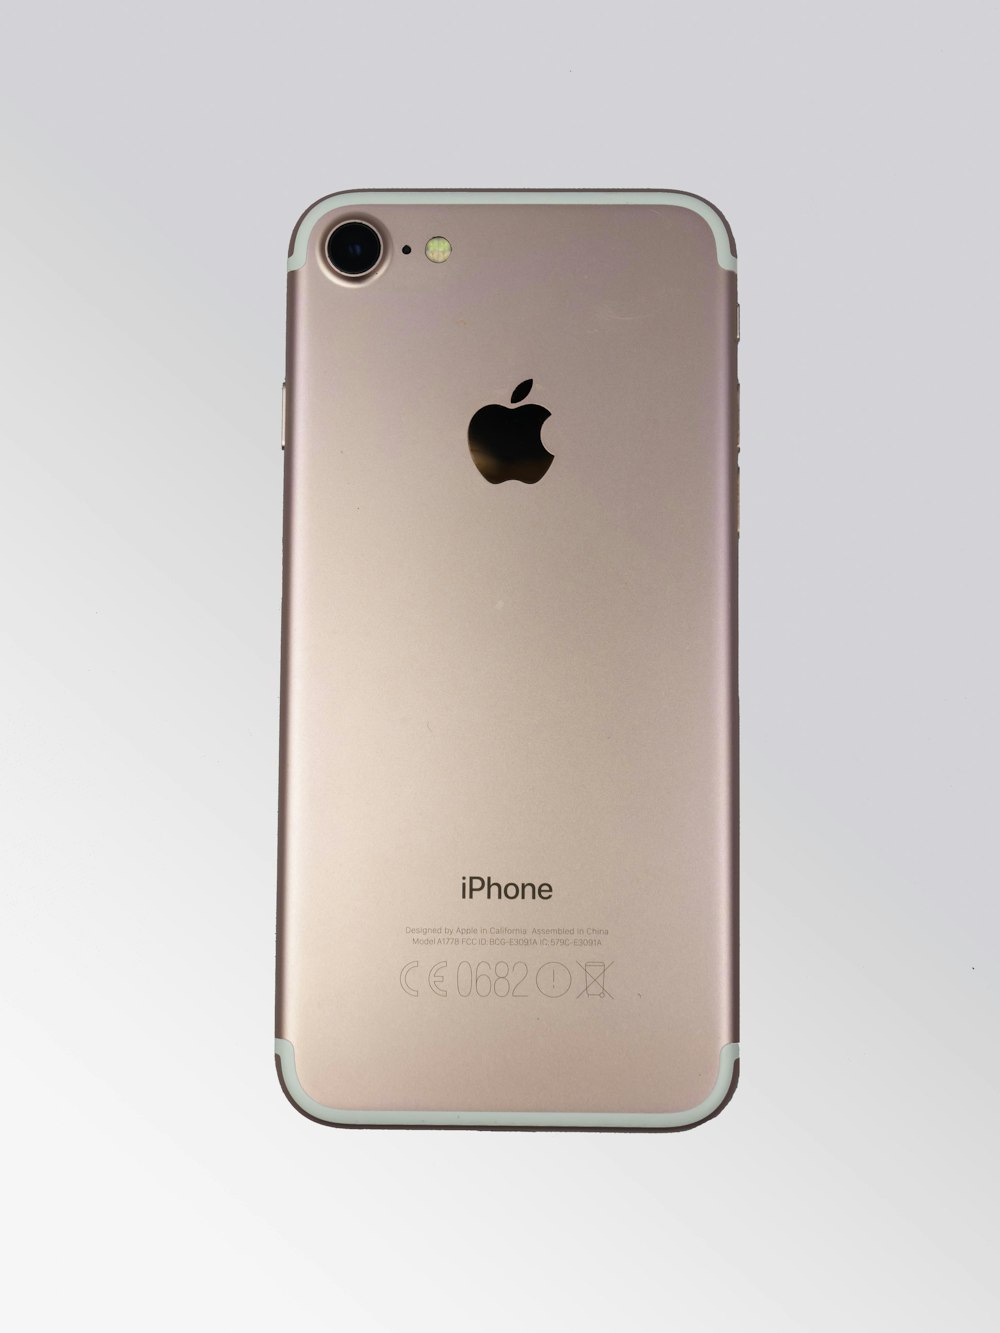 Rose gold iphone 6 s photo – Free Phone Image on Unsplash